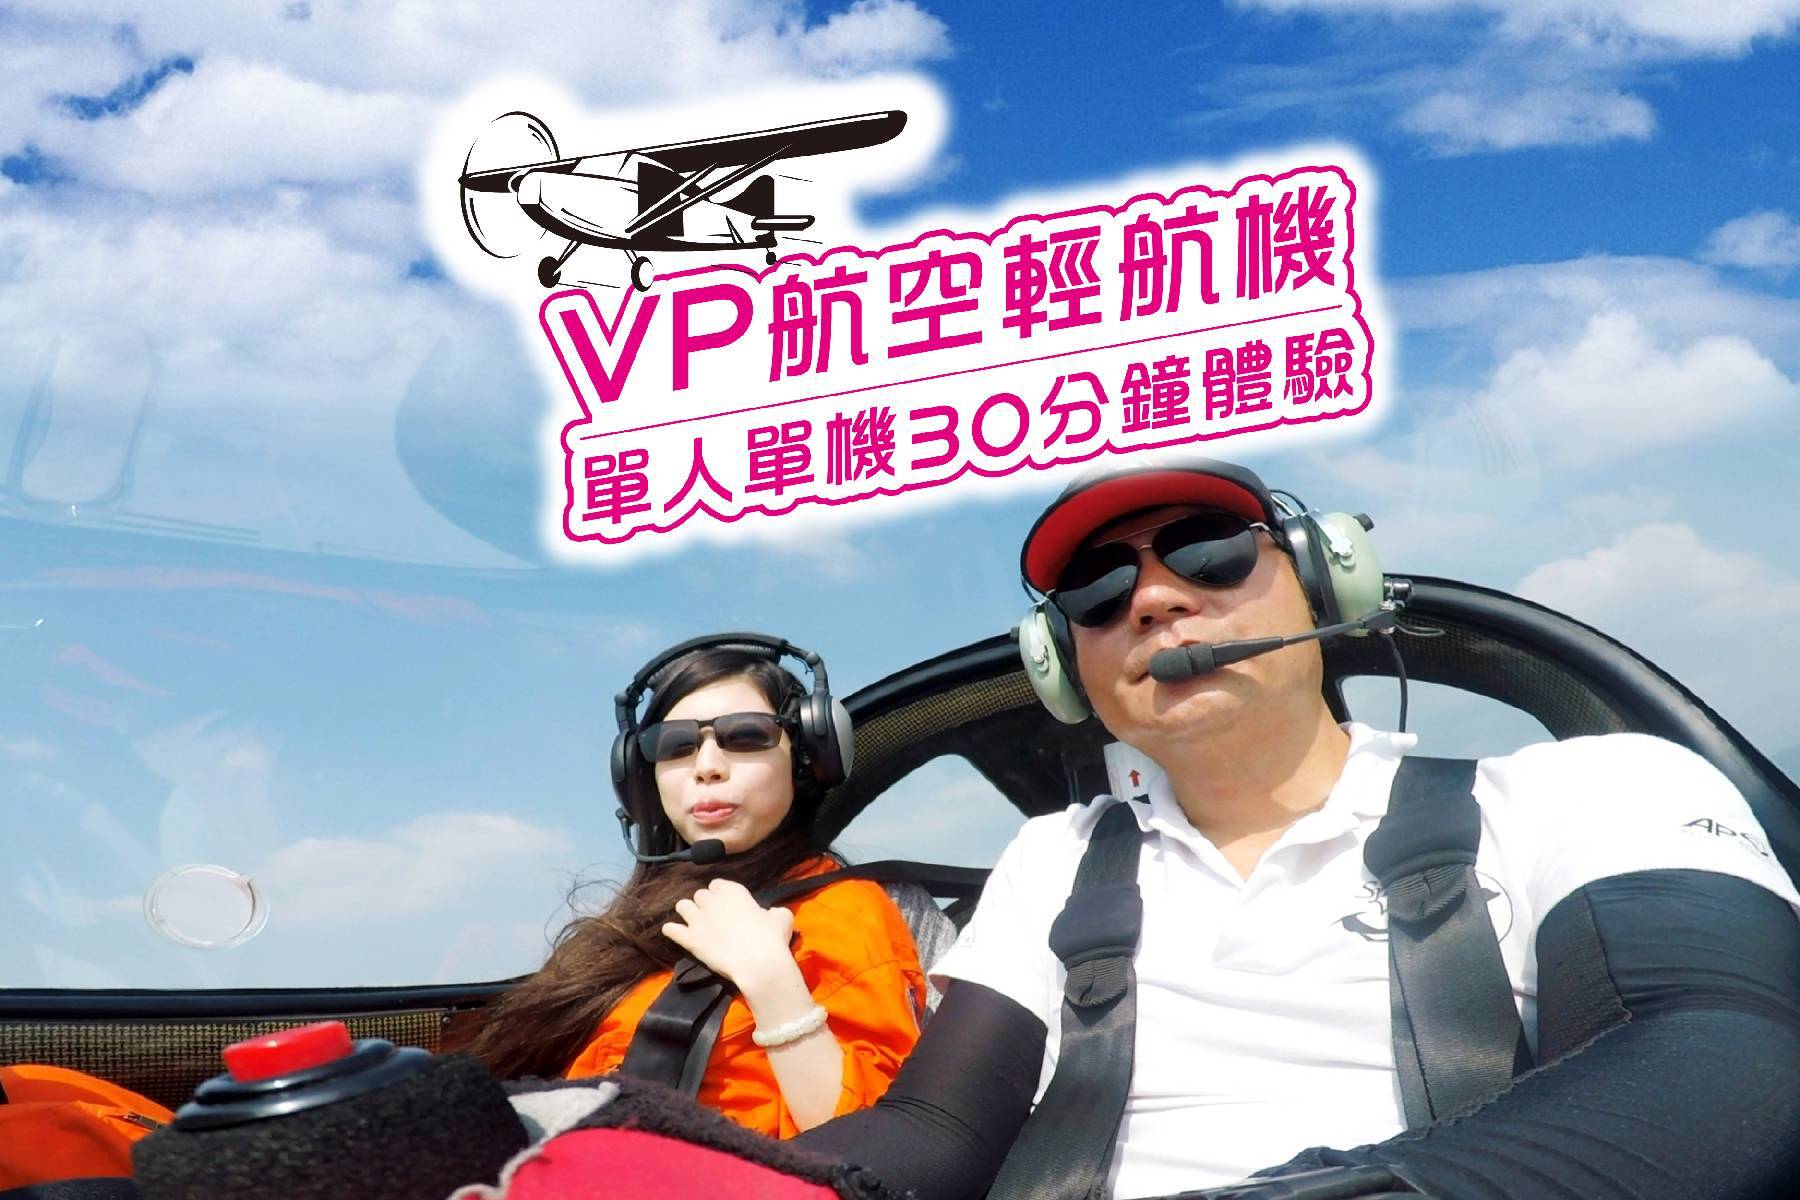 Vp航空-輕航機單人單機30分鐘體驗券1